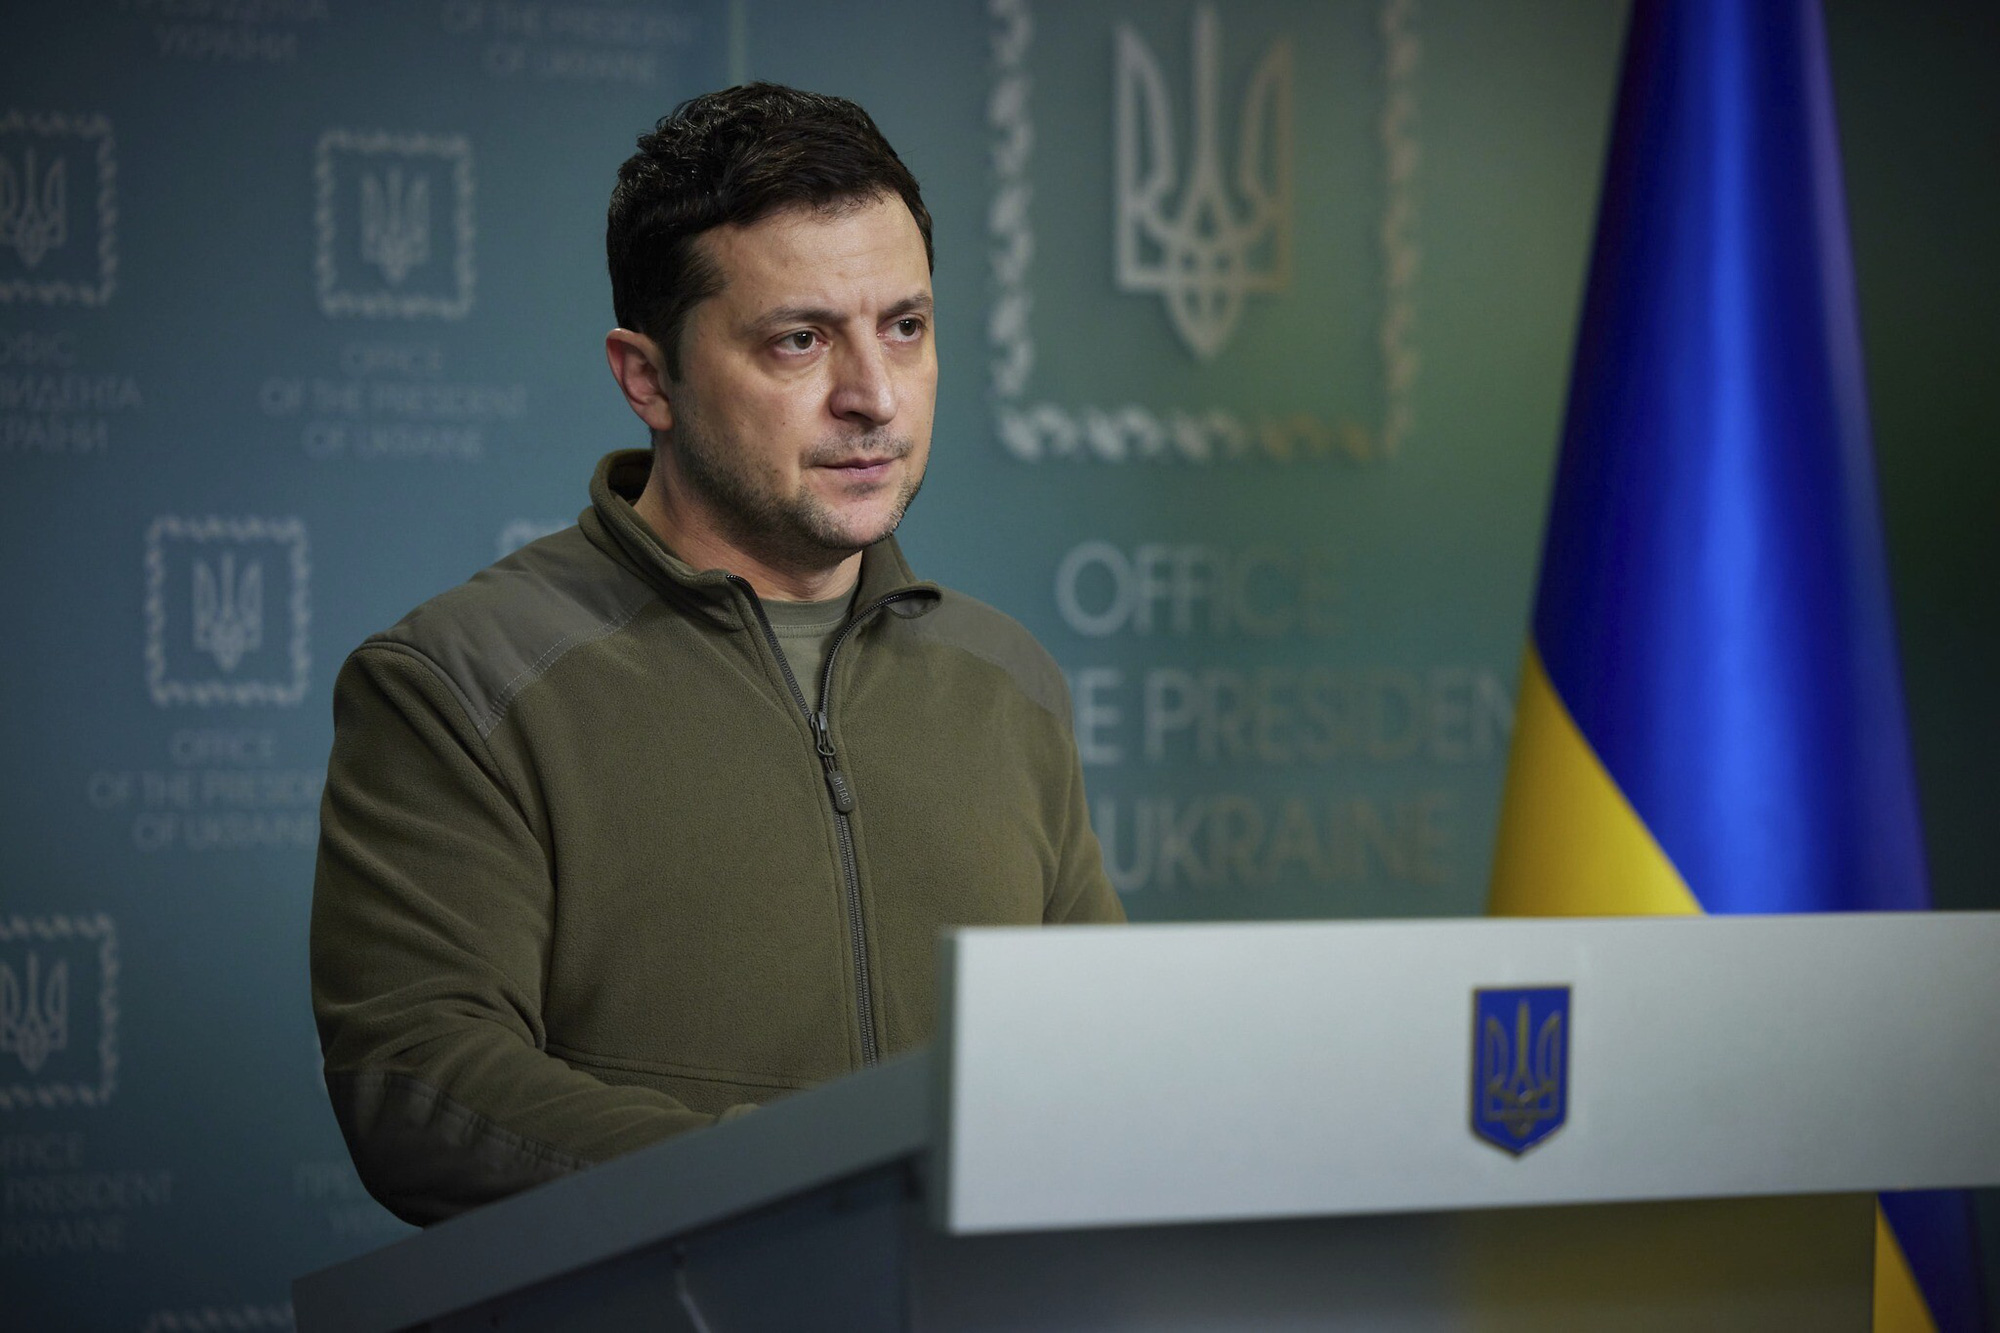 Nóng: Tổng thống Zelensky thông báo số lượng khủng lính đánh thuê nước ngoài đến Ukraine - Ảnh 1.